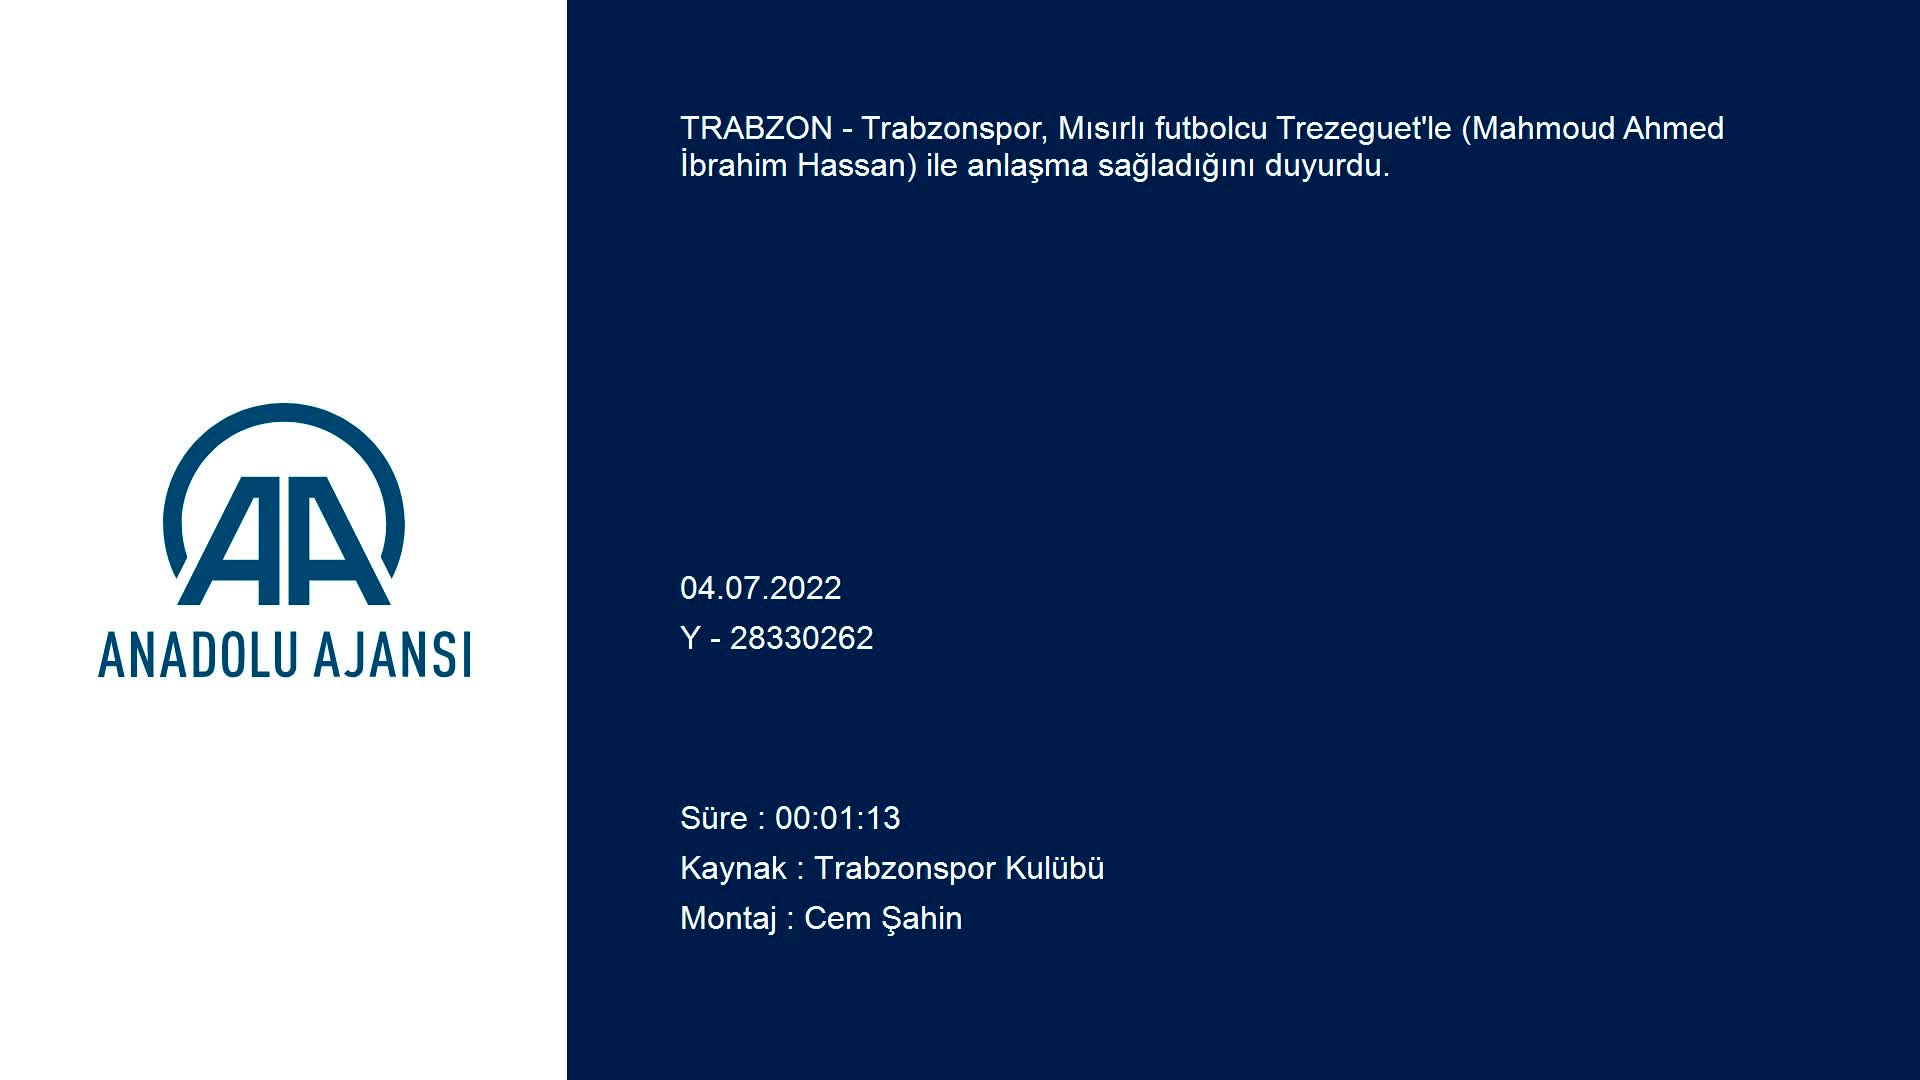 Trabzonspor, Trezeguet’yle 4 yıllık anlaşma sağladı